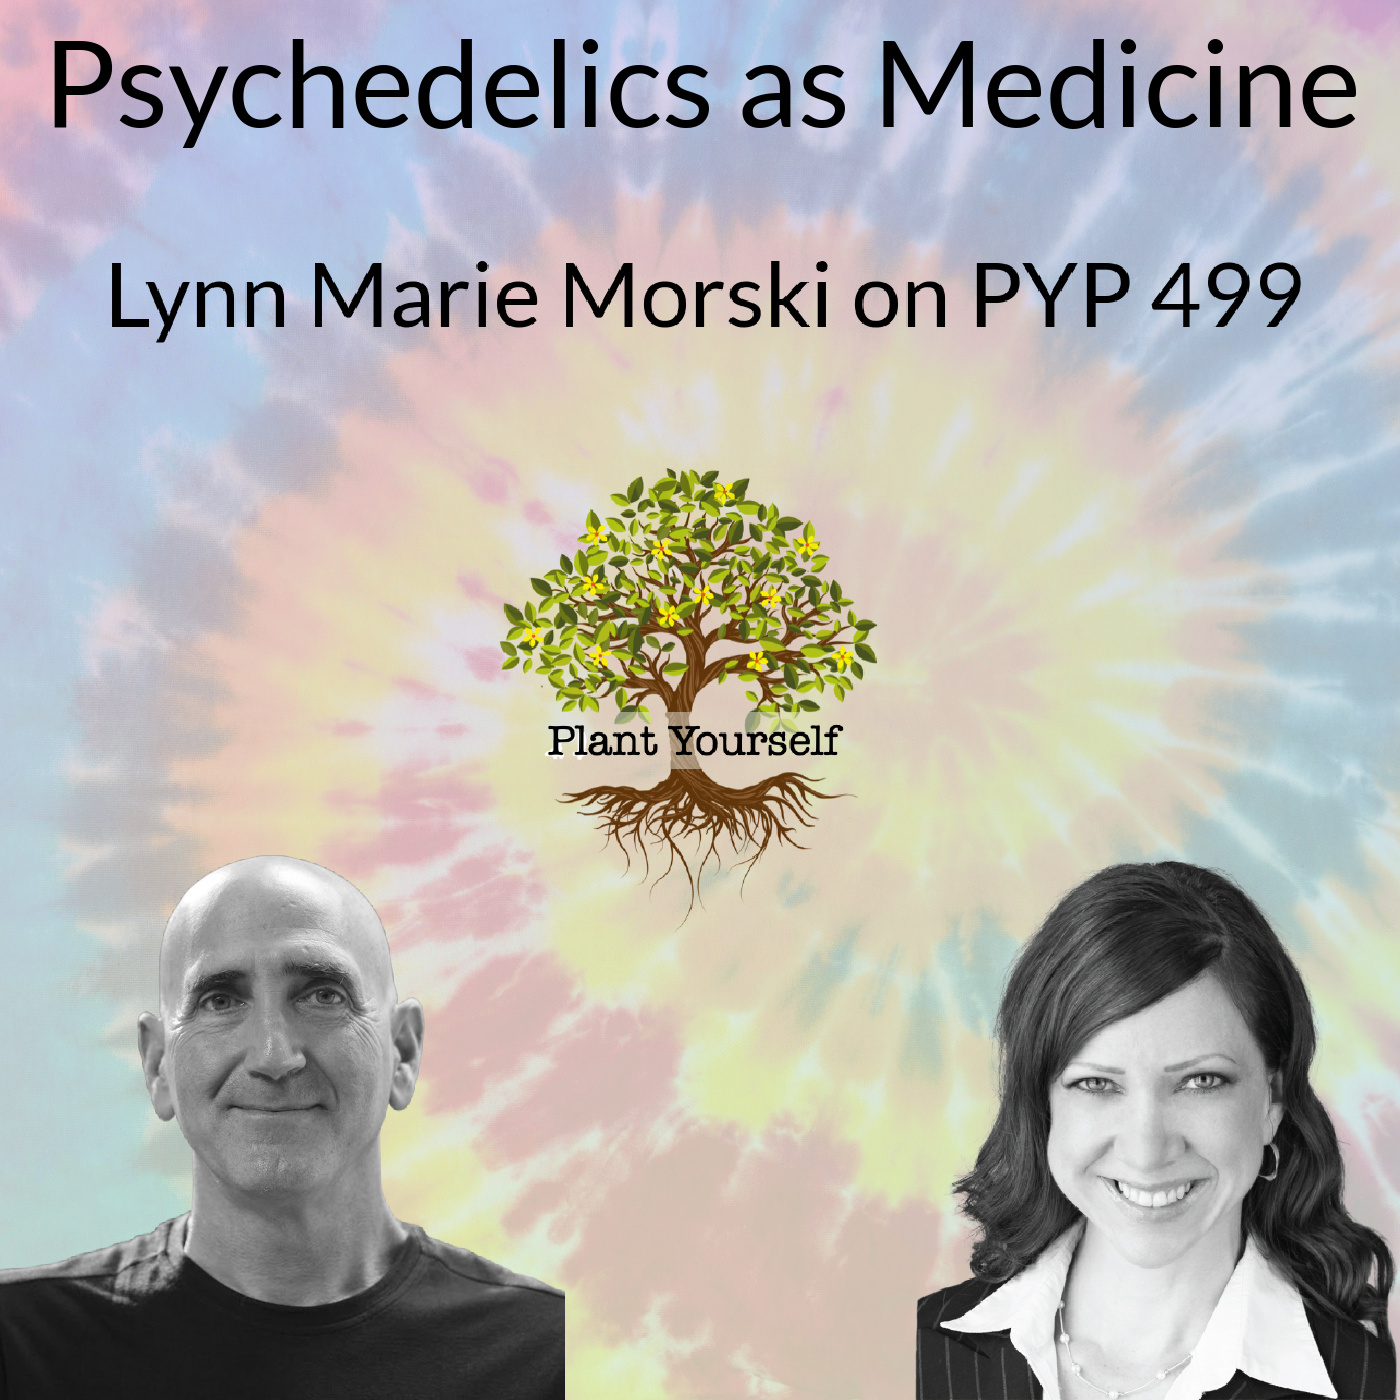 Psychedelics as Medicine: Lynn Marie Morski on PYP 499